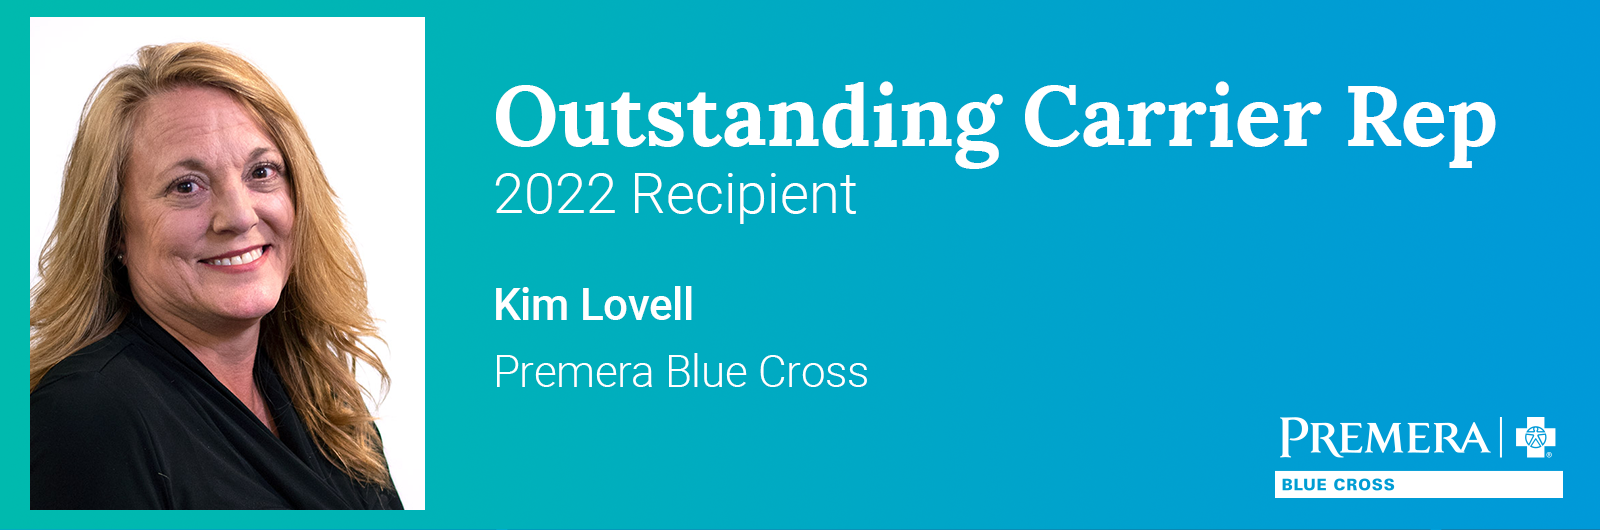 Kim Lovell, Outstanding Carrier Rep 2022 Recipient